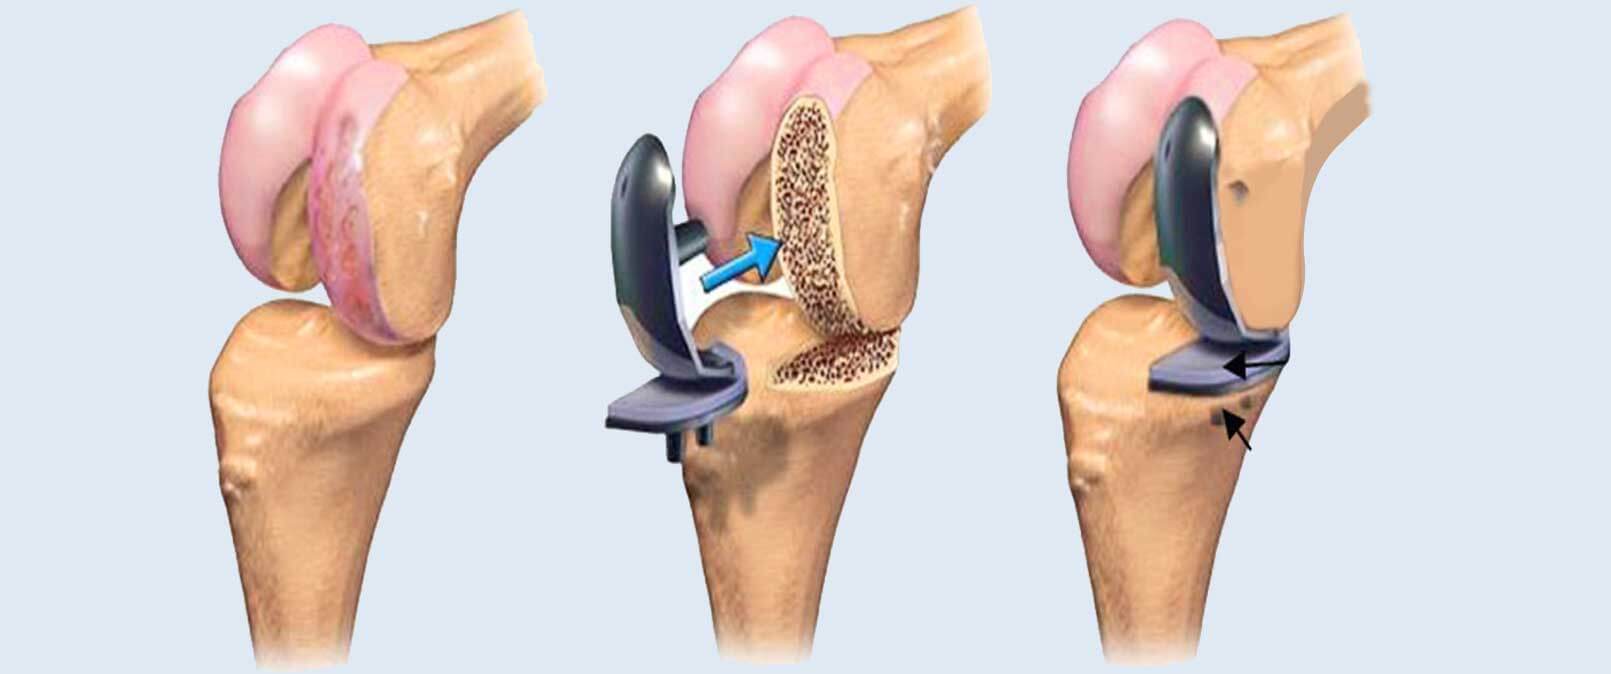 Best knee replacement surgeon in hyderabad